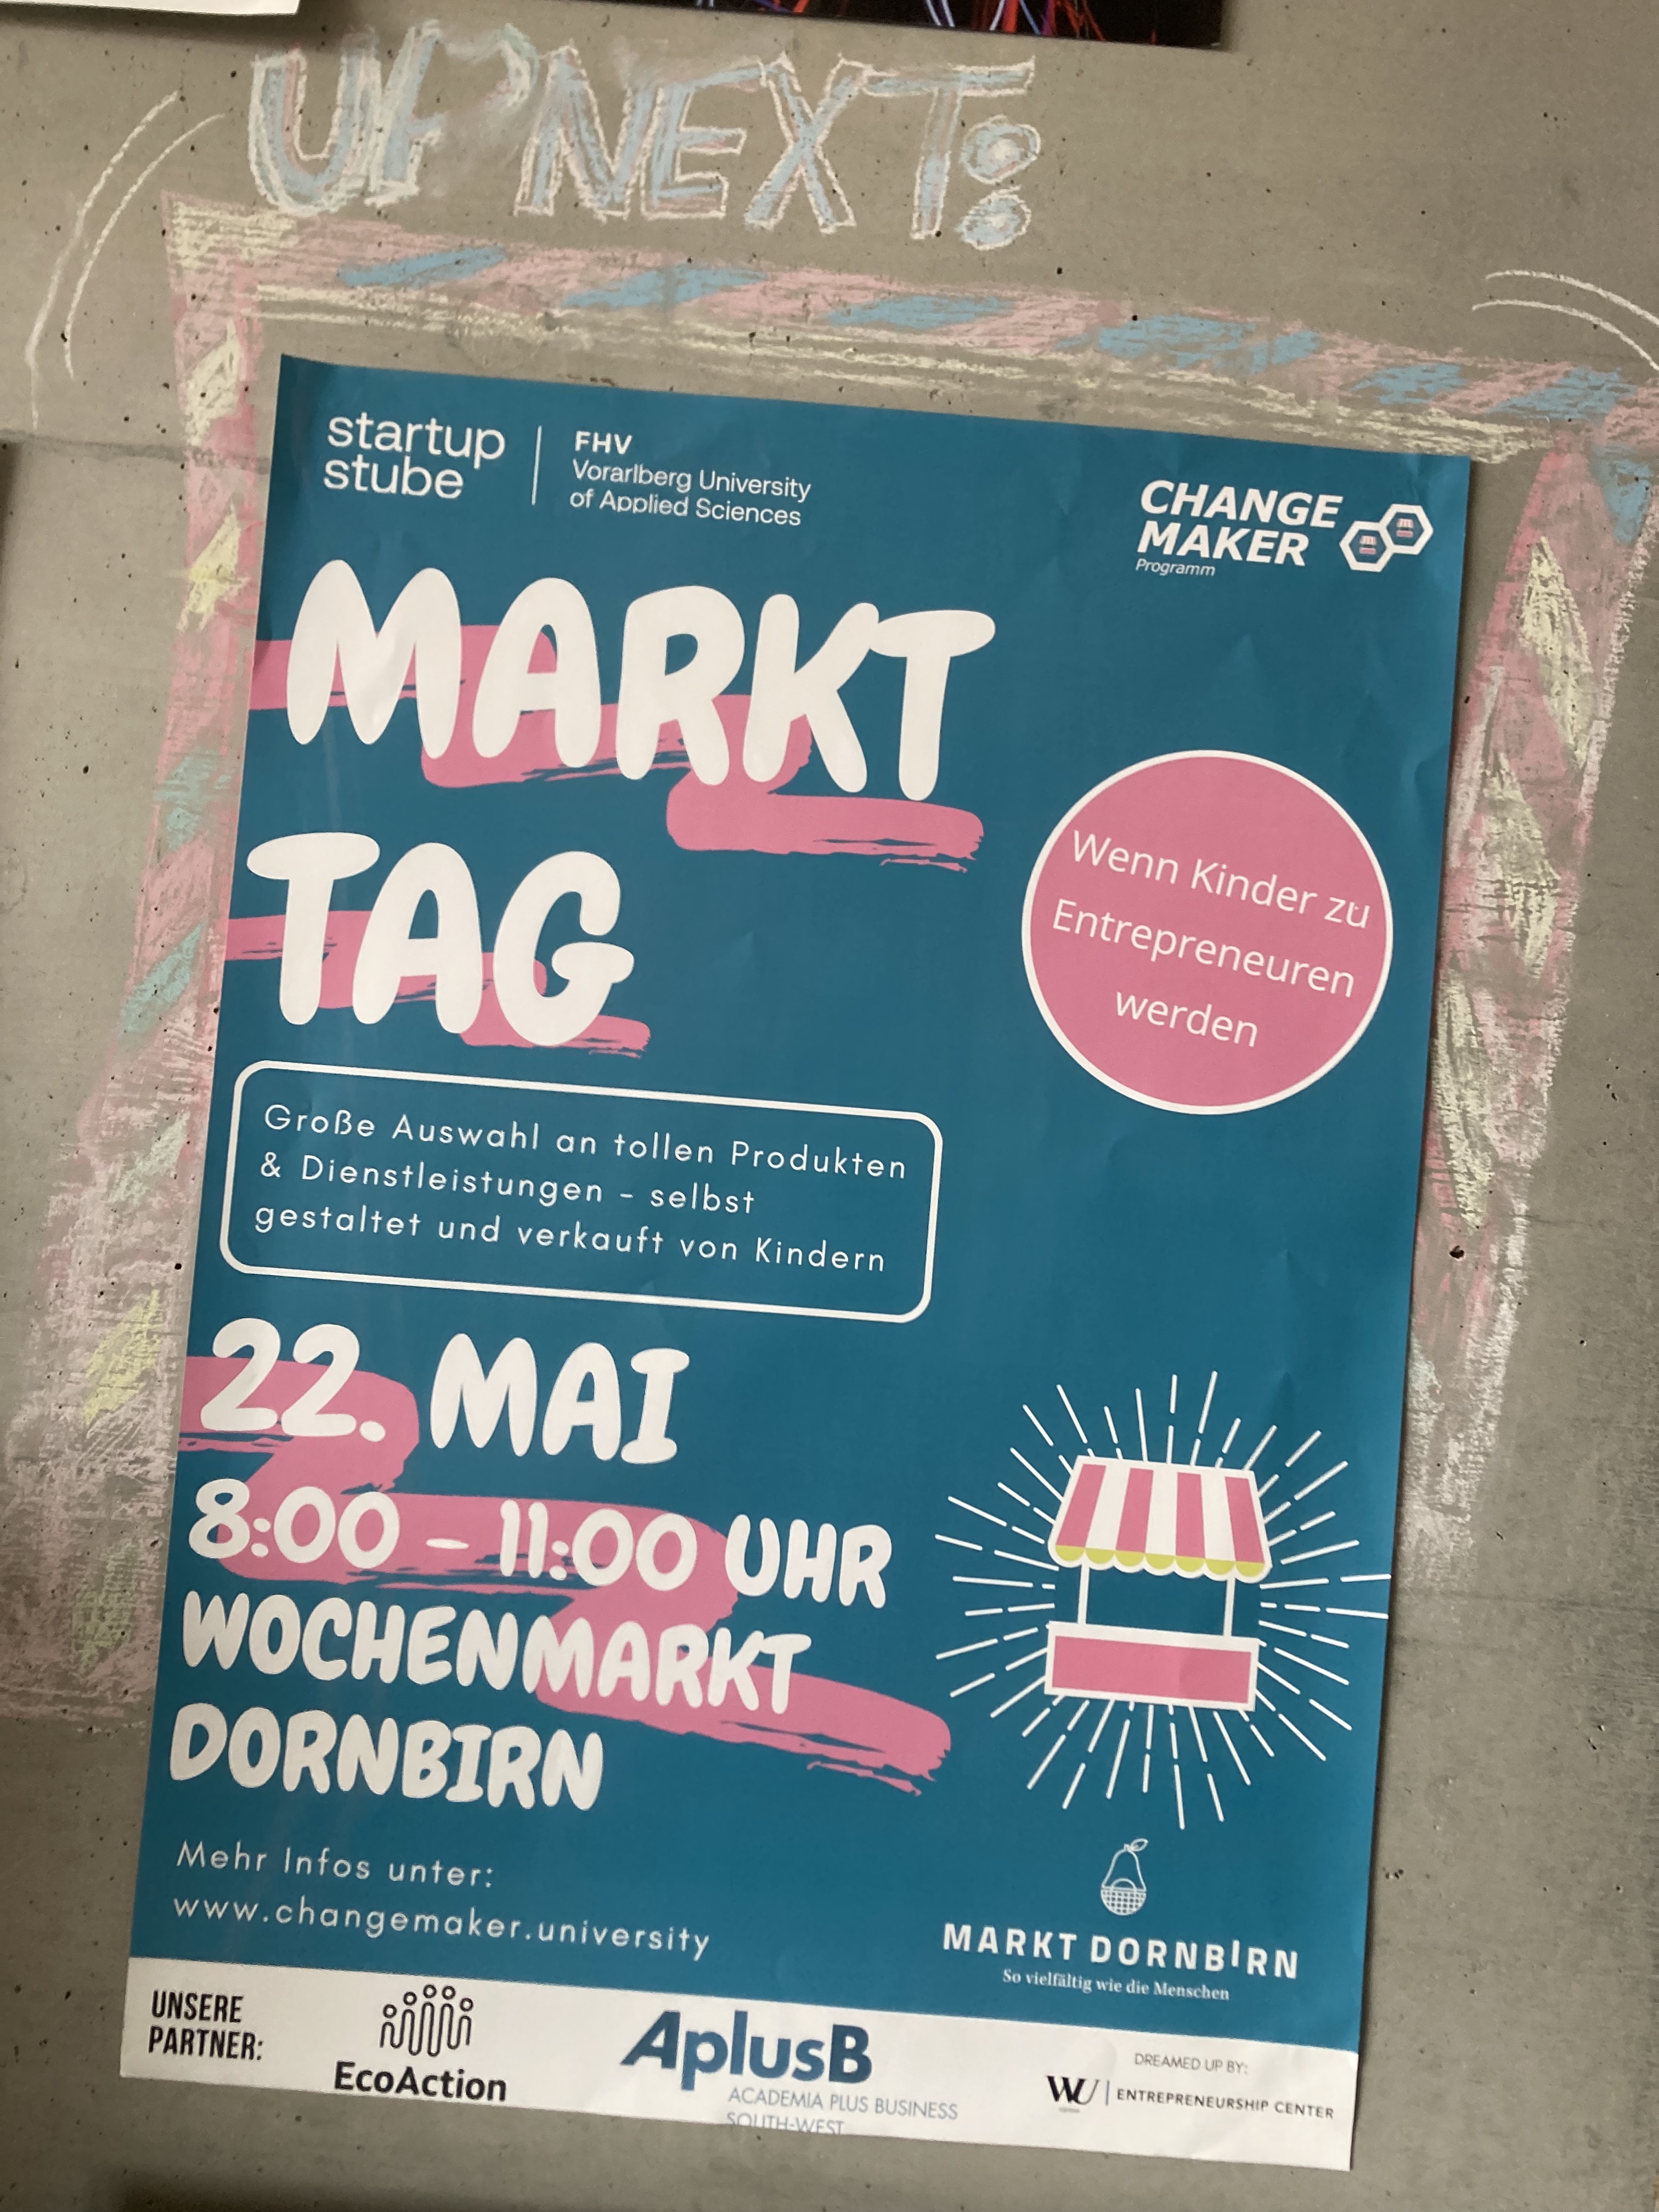 Changemaker Markttag - Wochenmarkt Dornbirn